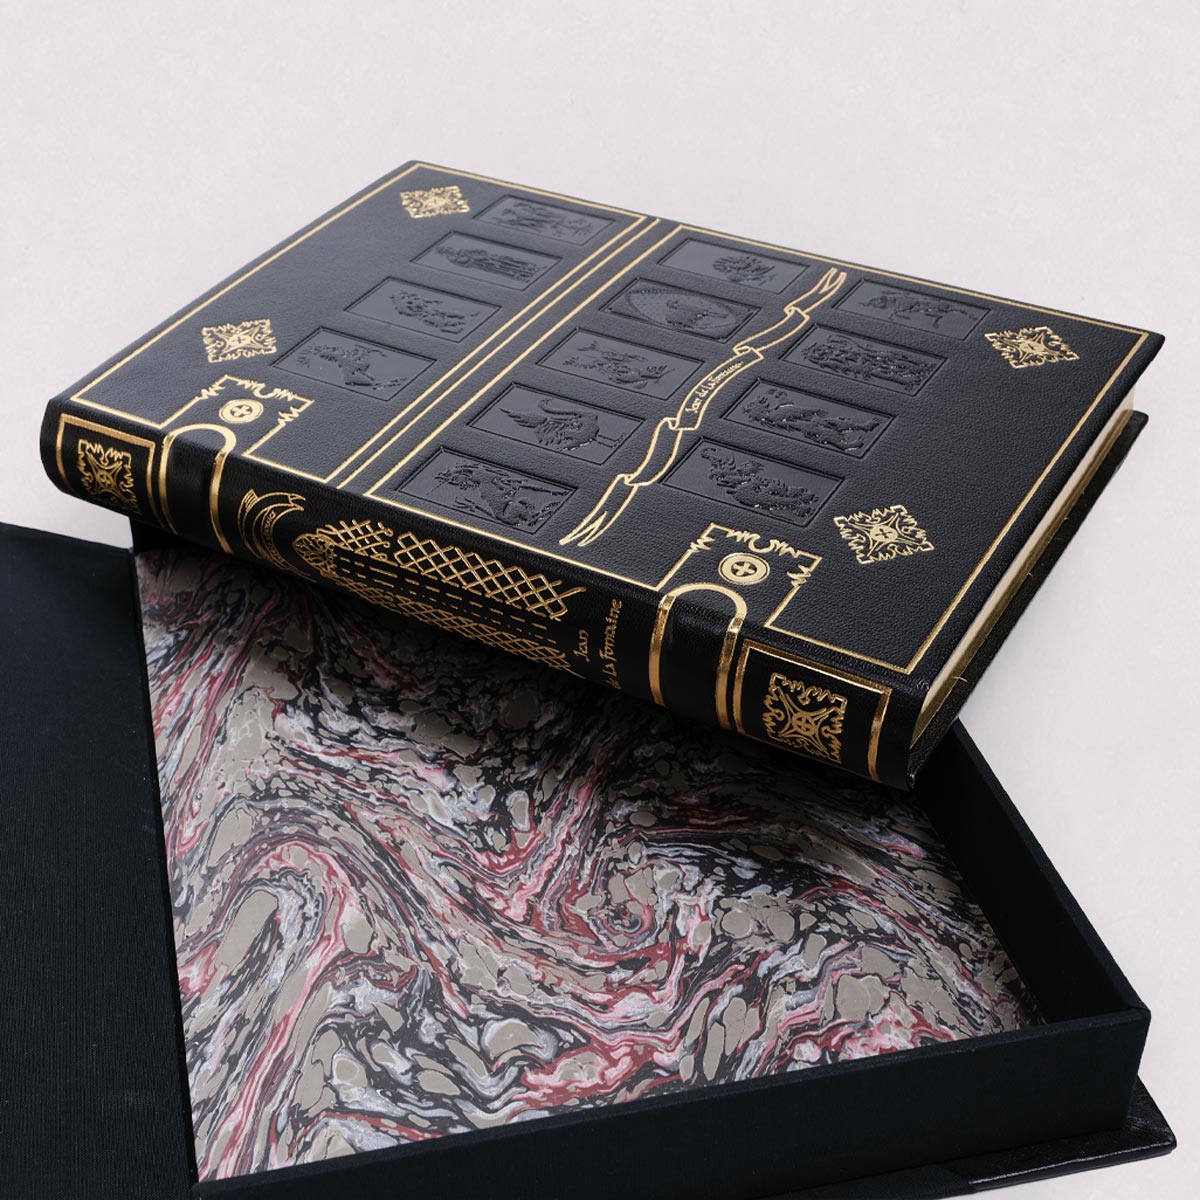 Les Fables de La Fontaine livre de collection édition LARROQUE noir coffret